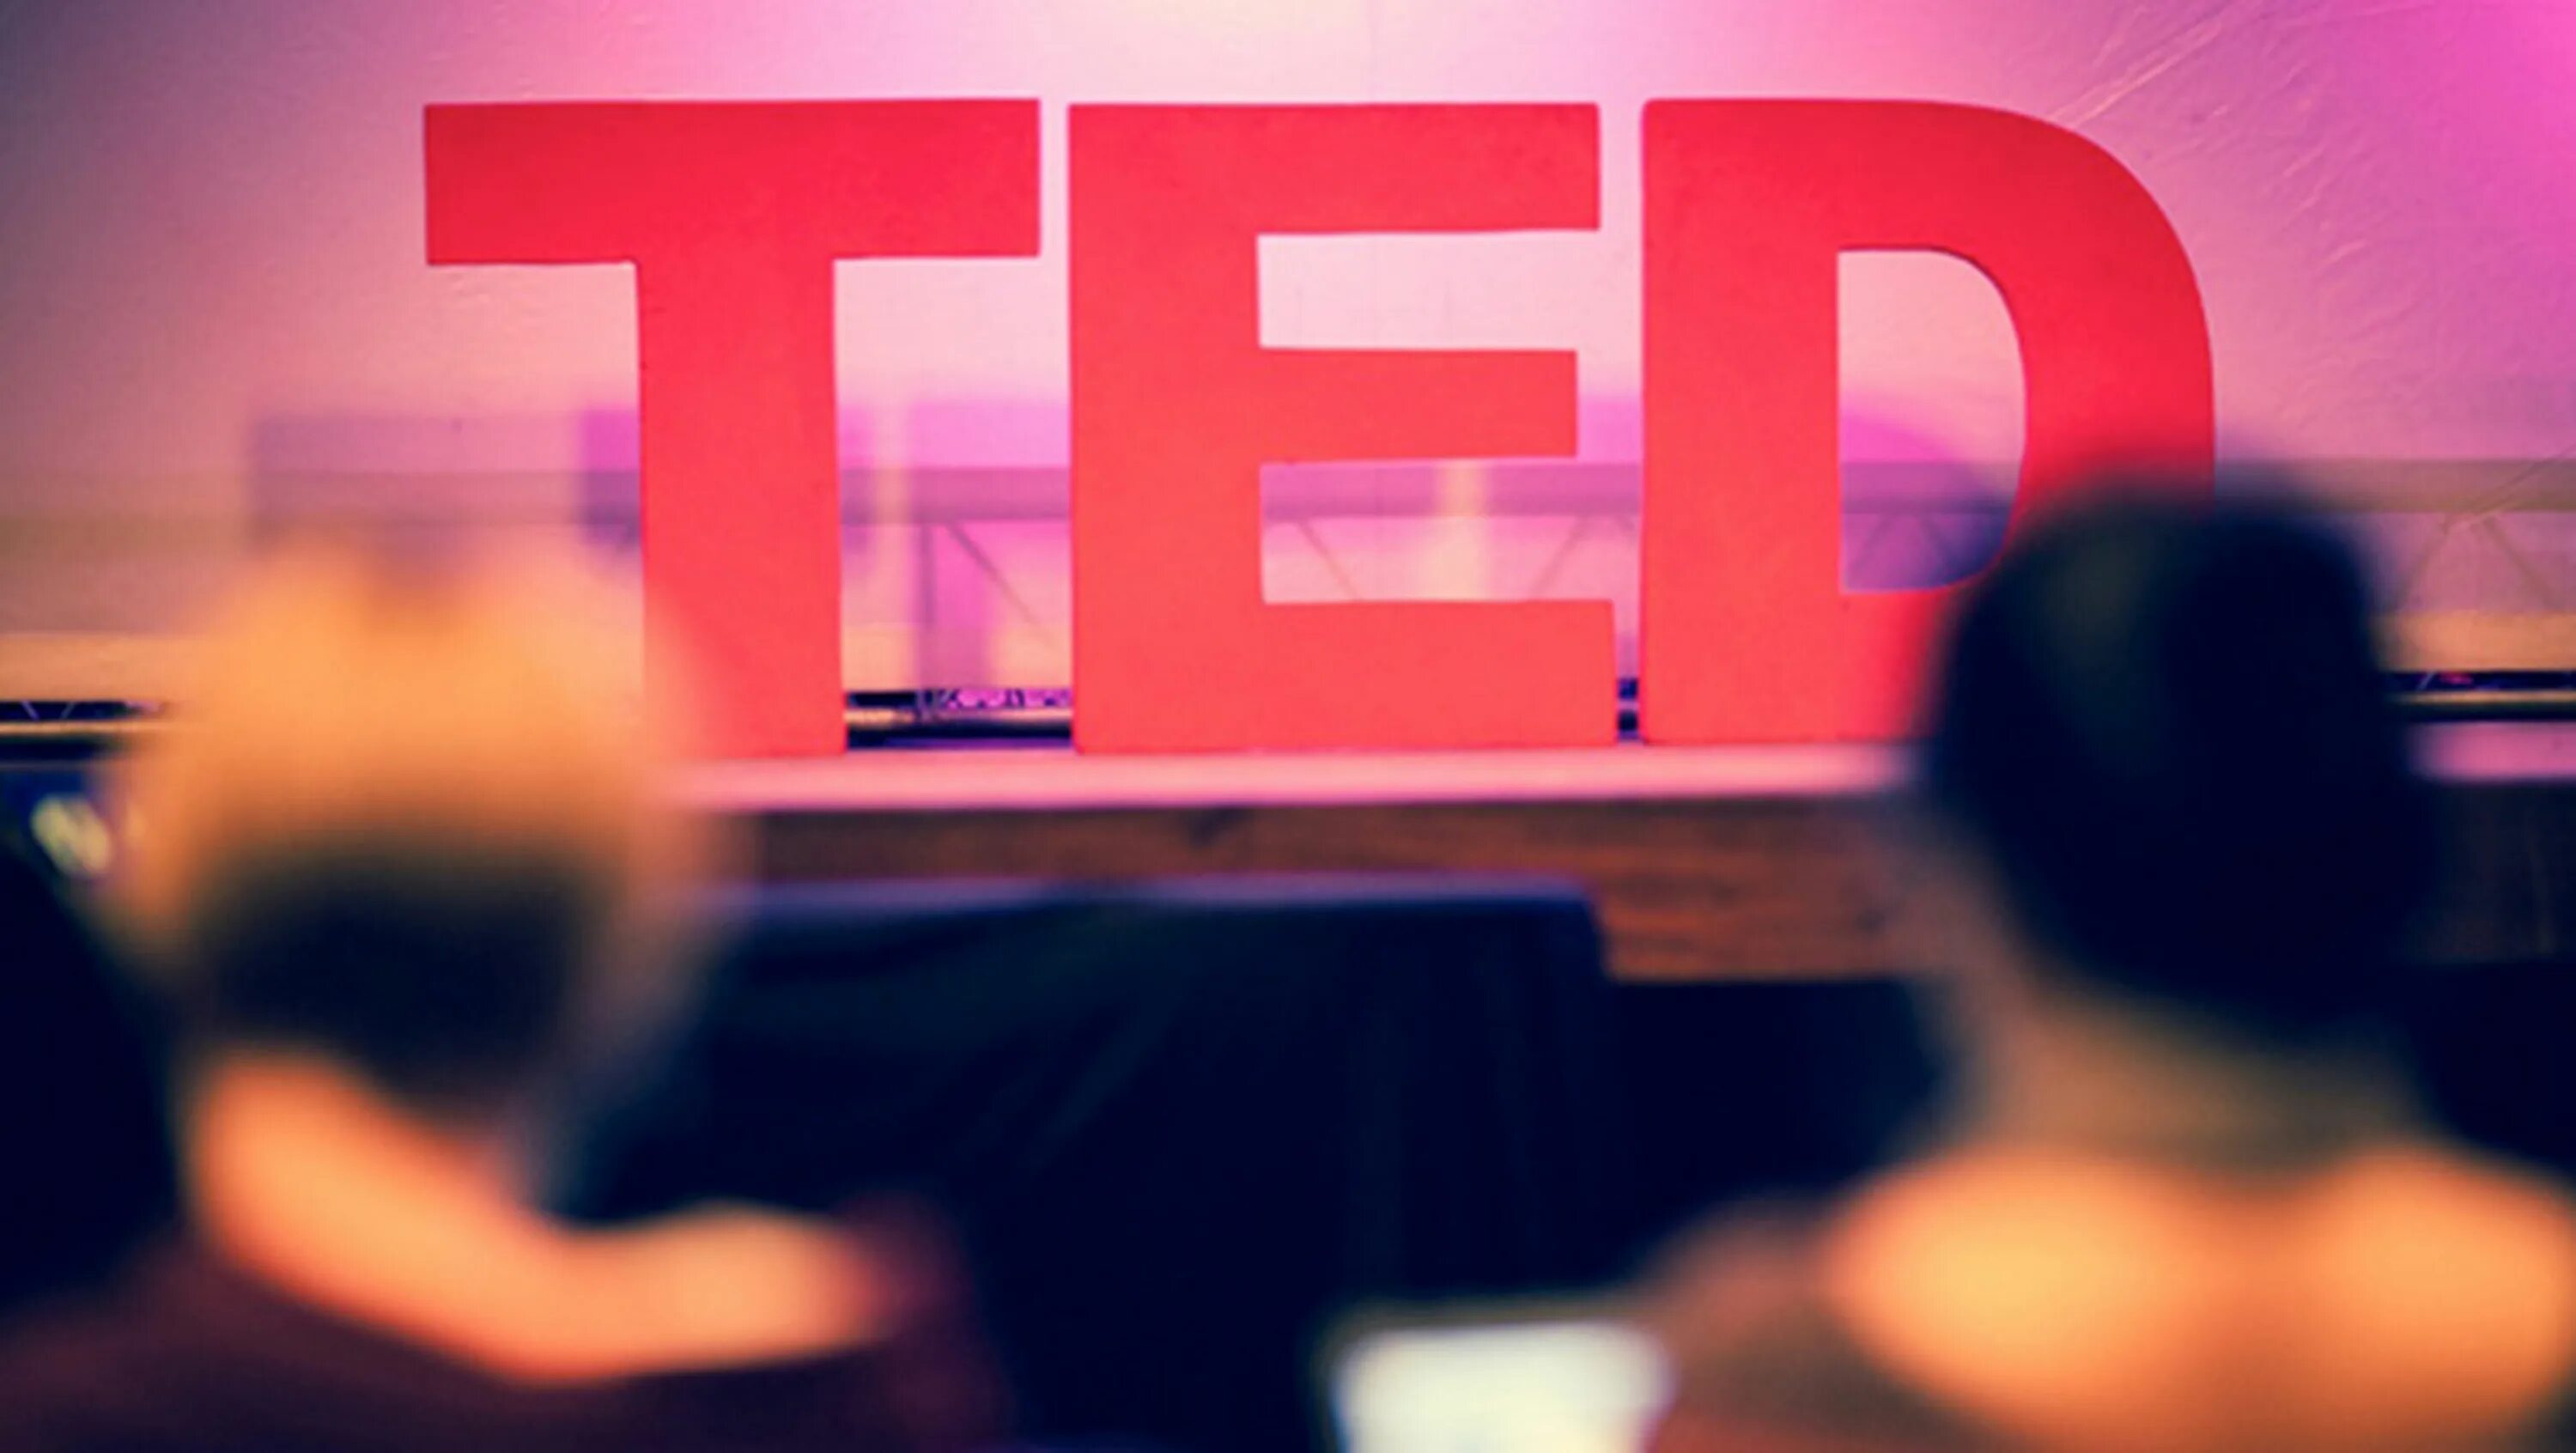 Public secrets. Ted. Ted выступление. Ted конференция. TEDX конференция.